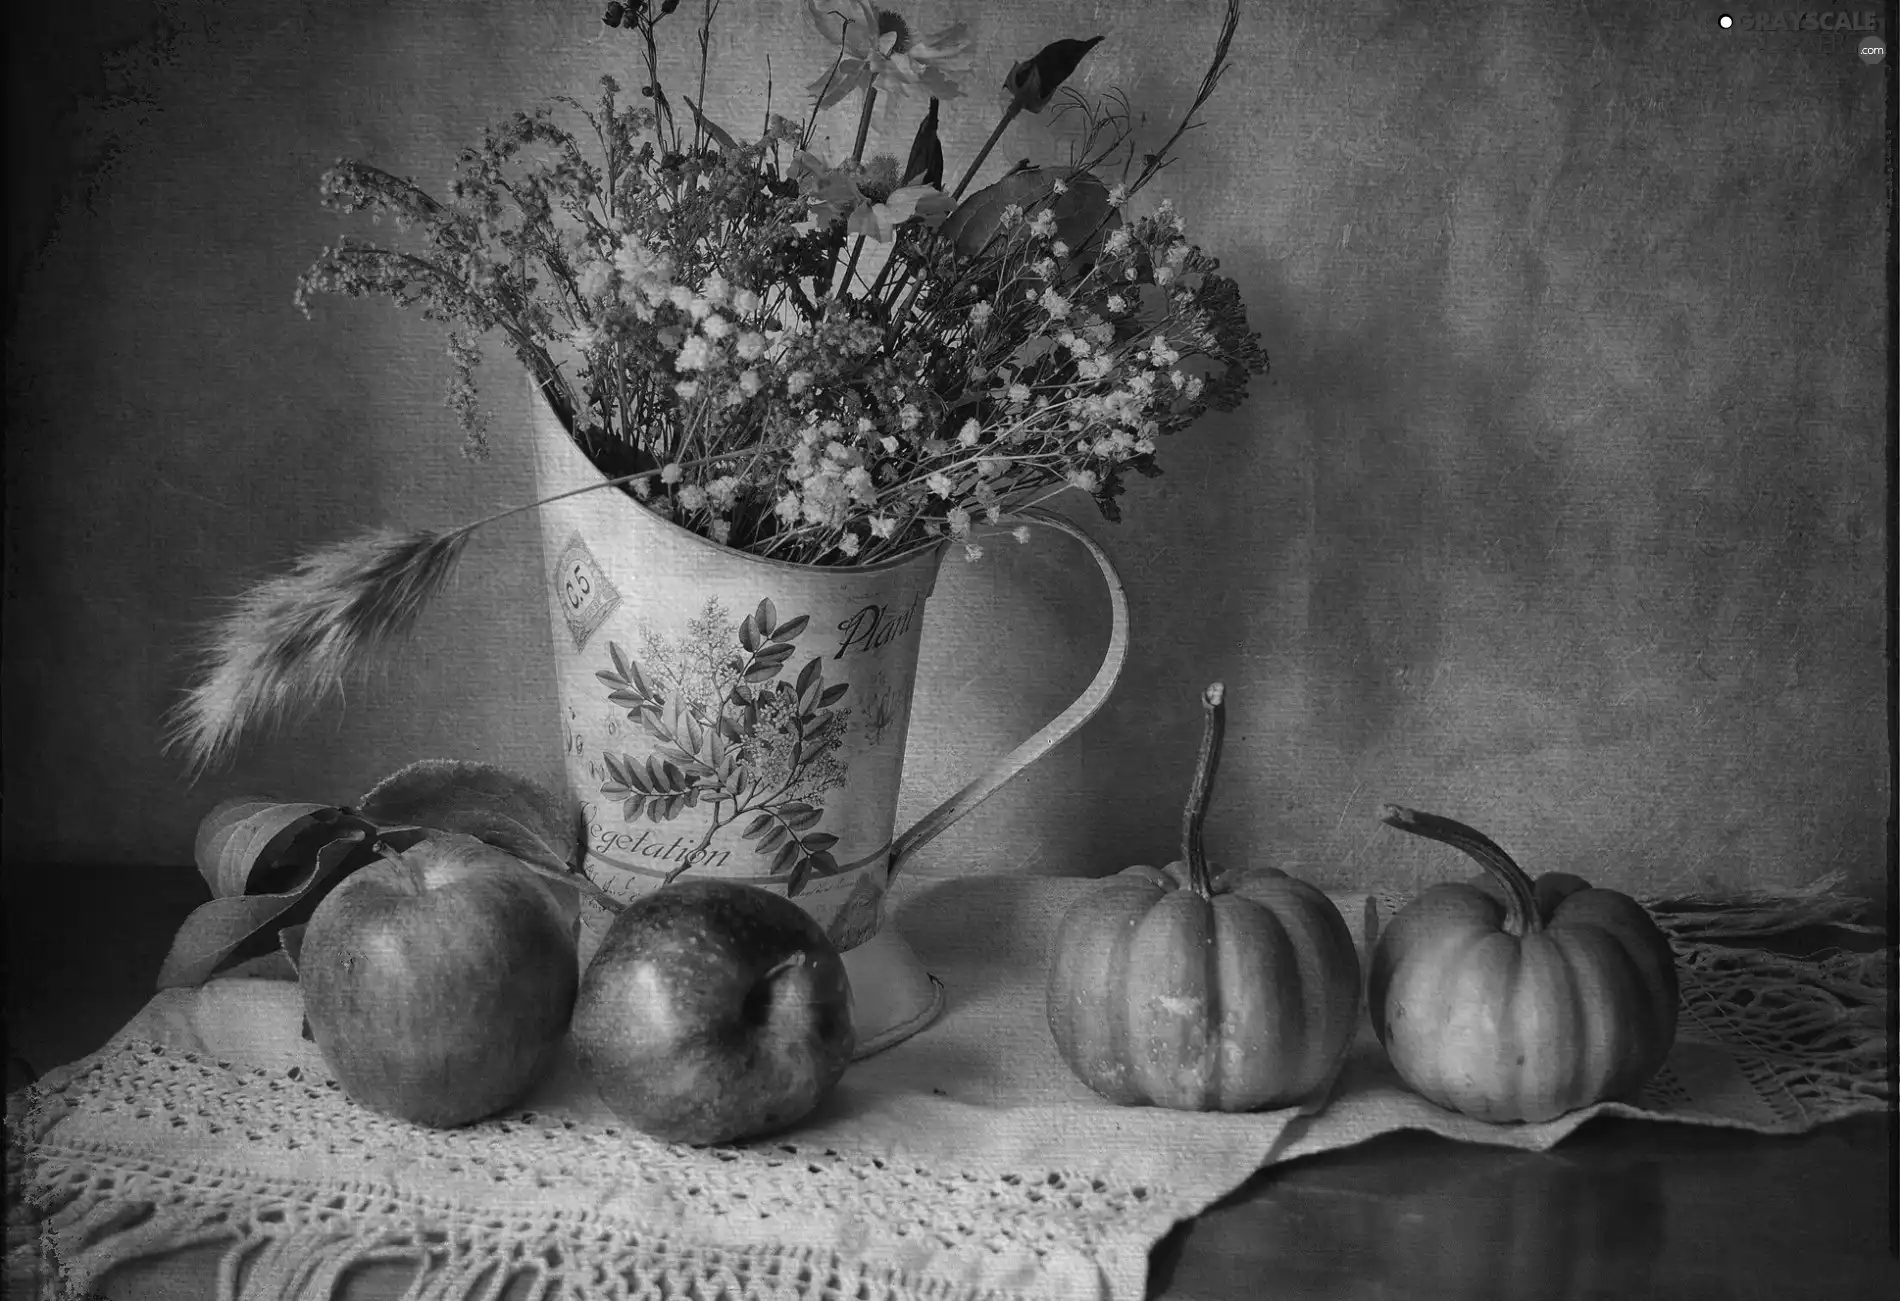 apples, pumpkin, dried, Flowers, pitcher